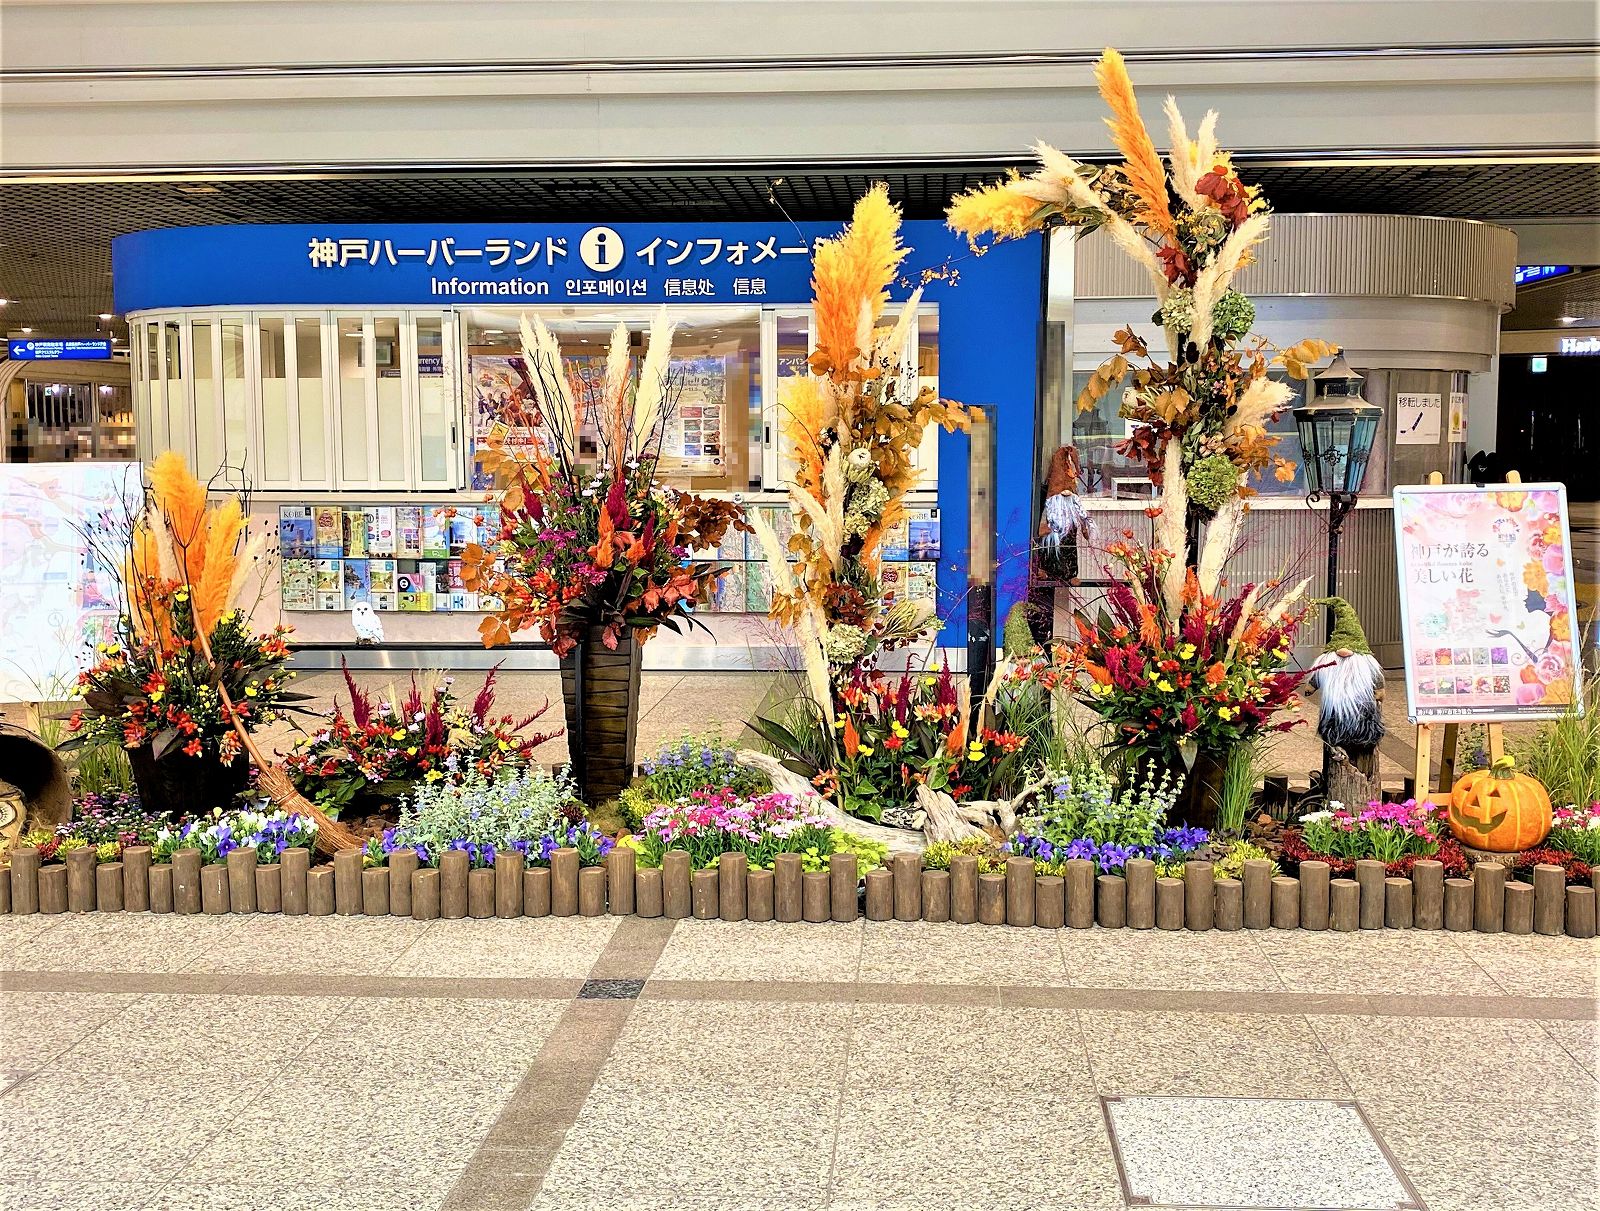 神戸の花で神戸の街を彩る 街の彩ガーデン が登場 期間限定の展示でデュオこうべも秋らしく 街の彩ガーデン 神戸の花 神戸産の花 デュオこうべ 東灘ジャーナル